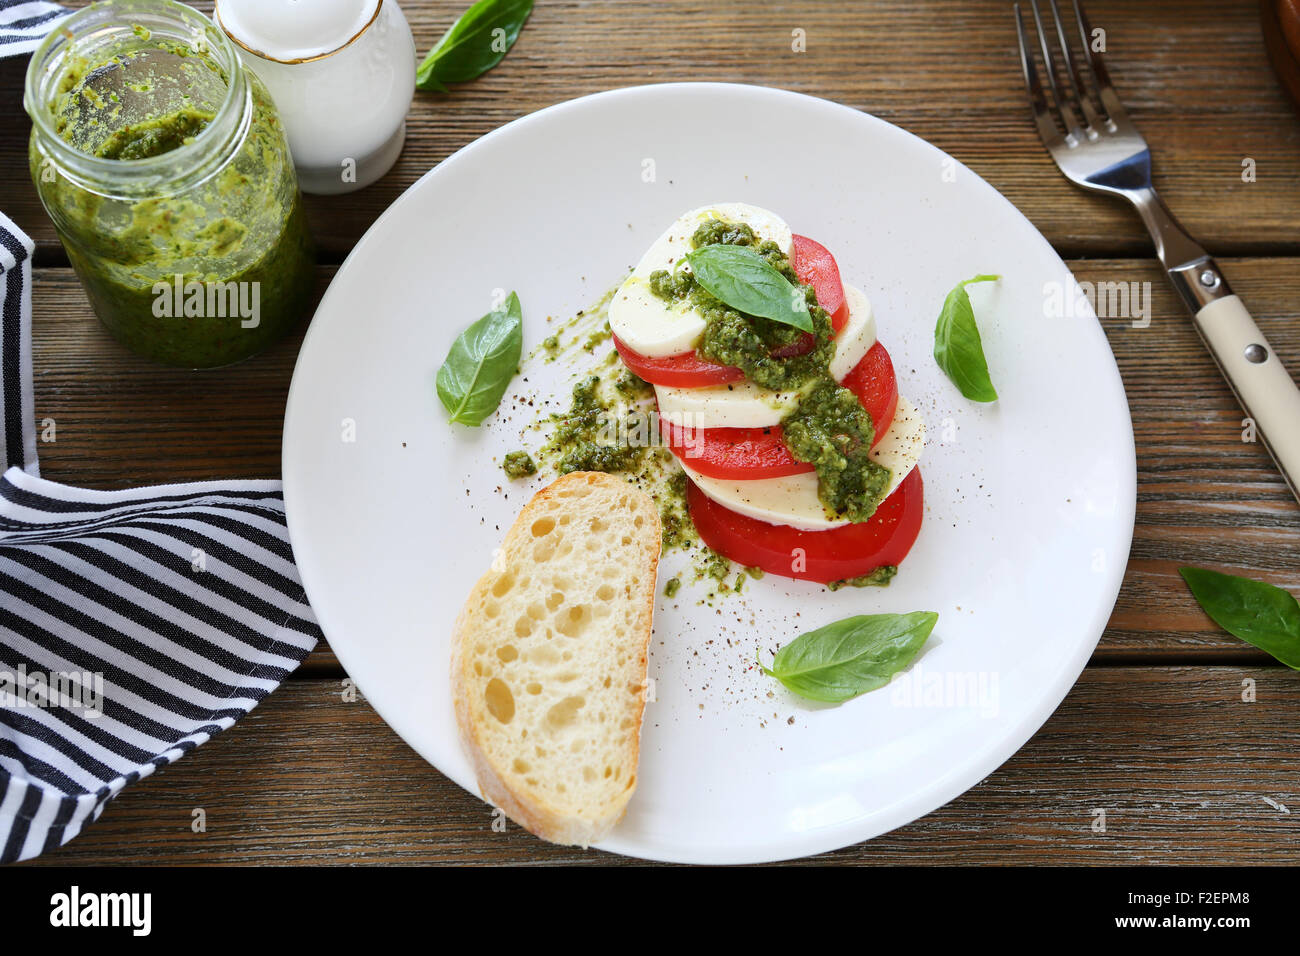 Caprice-Salat auf einem Teller, Essen Stockfotografie - Alamy